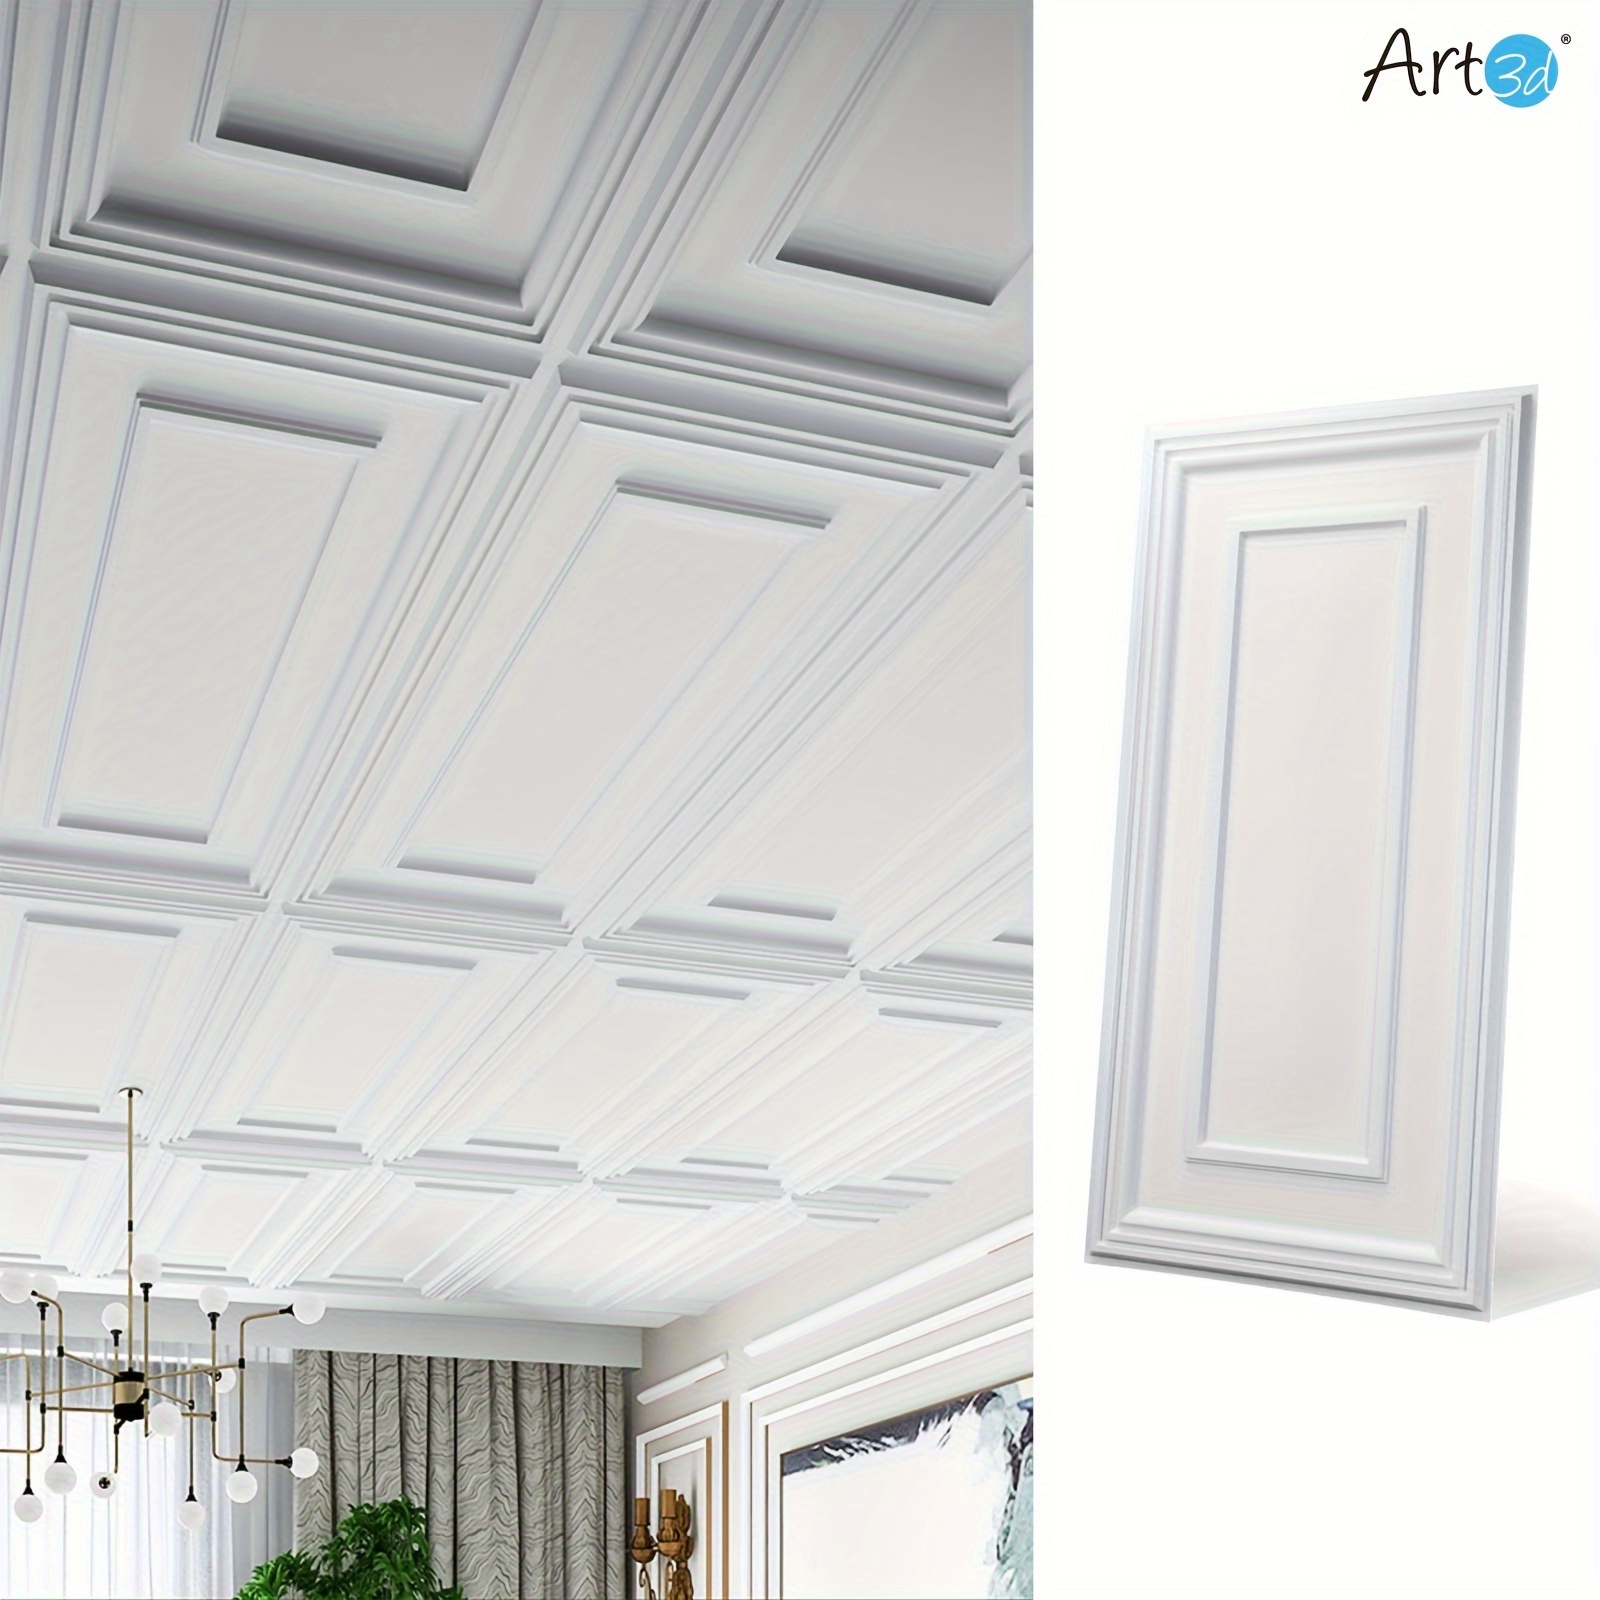 

Art3d 12-pack Rectangular Frame Design 24" X 48" White Ceiling Tiles, 96 Sq Ft/case